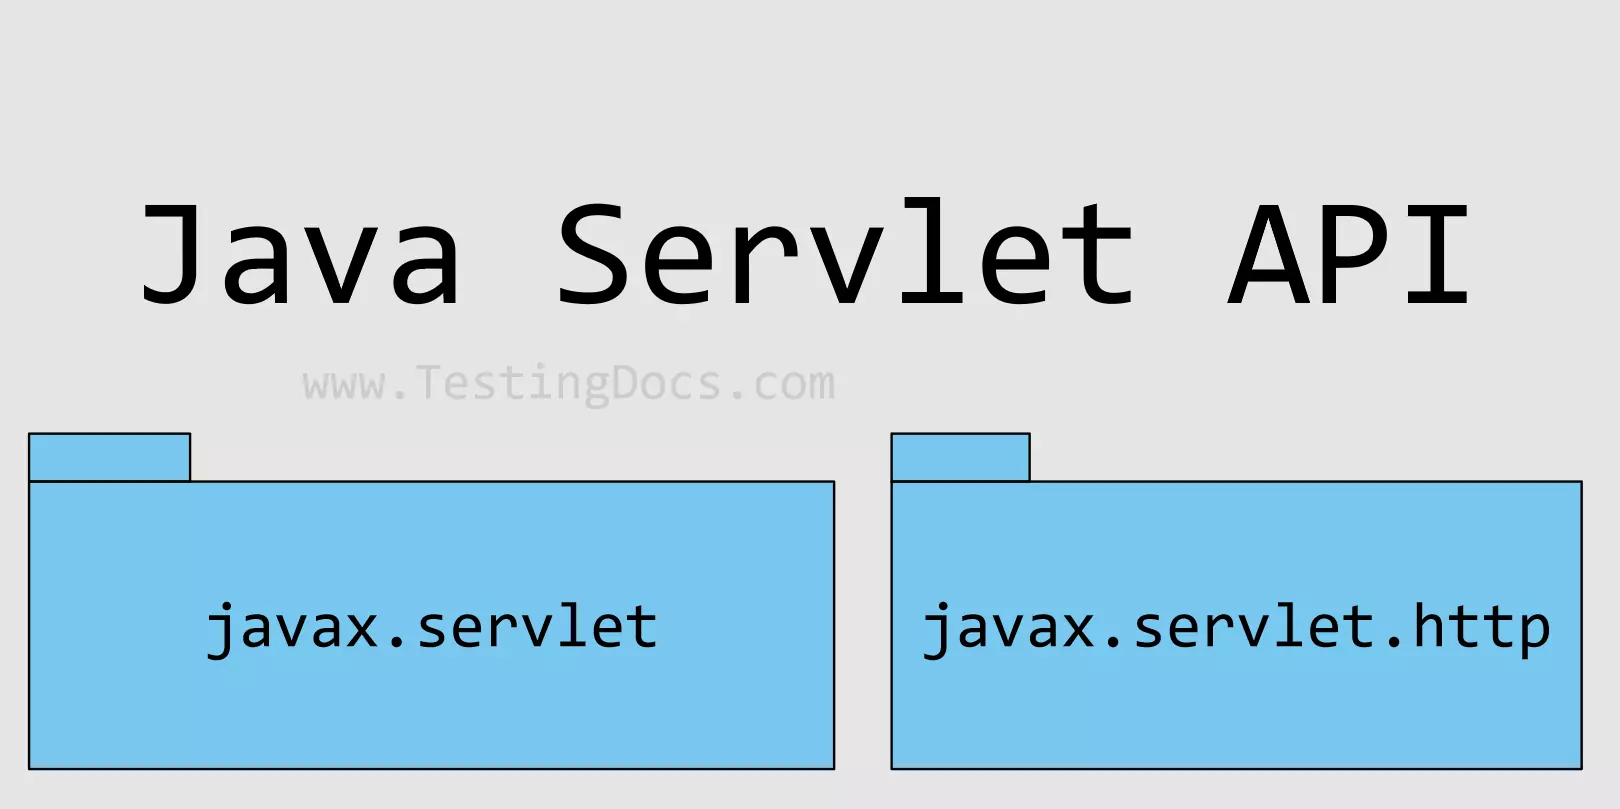 Java Servlet API Packages